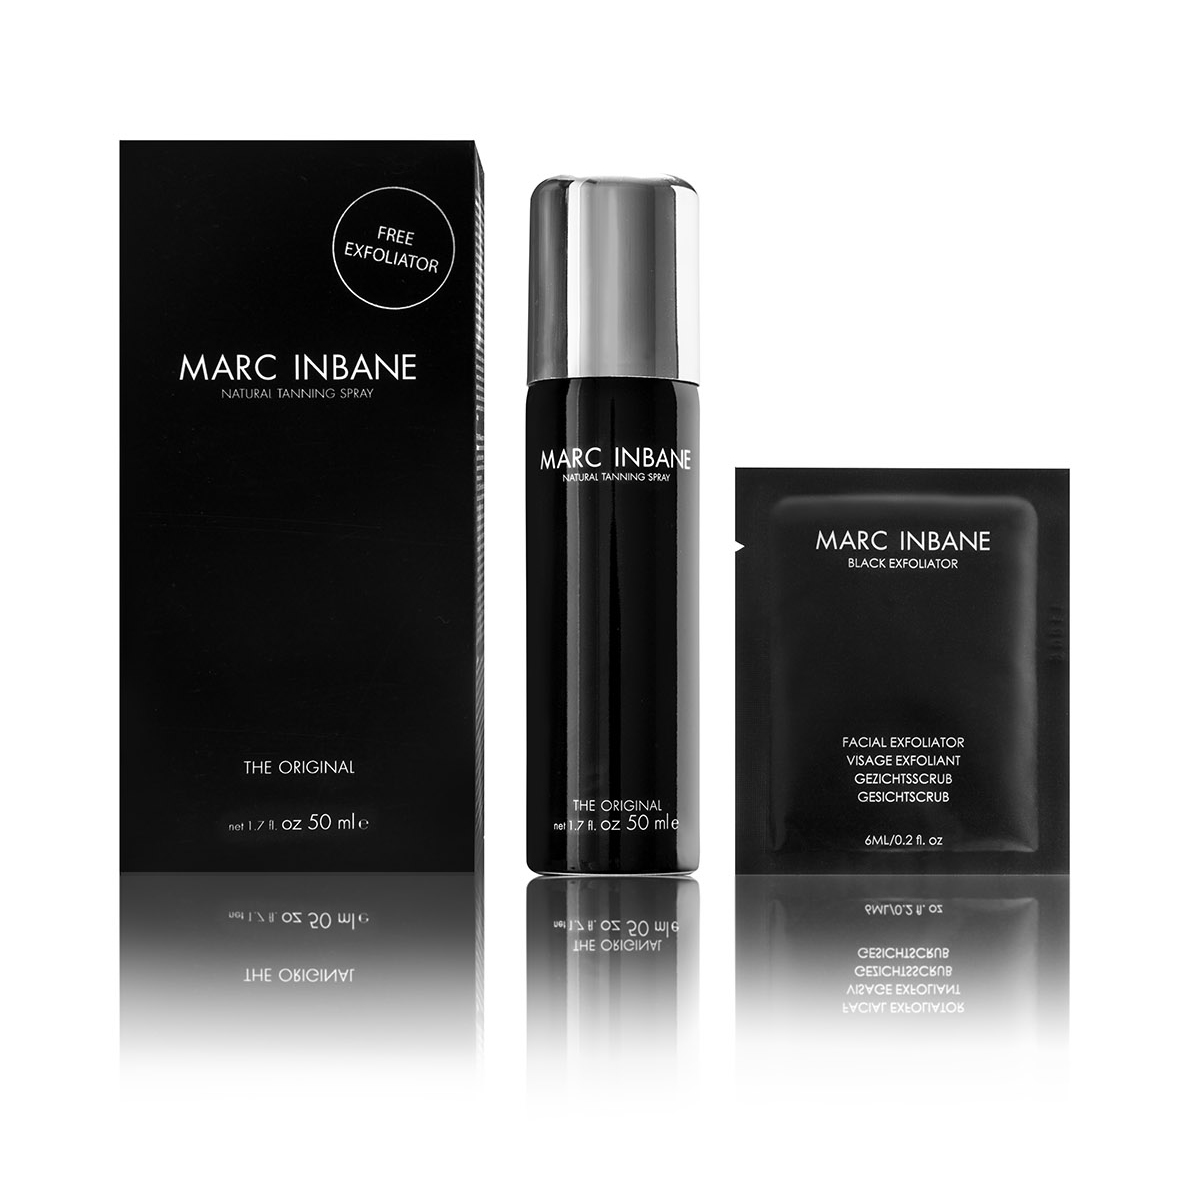 Marc Inbane Le Petit - Natural Tanning Spray 50 ml + 6 ml Exfoliator